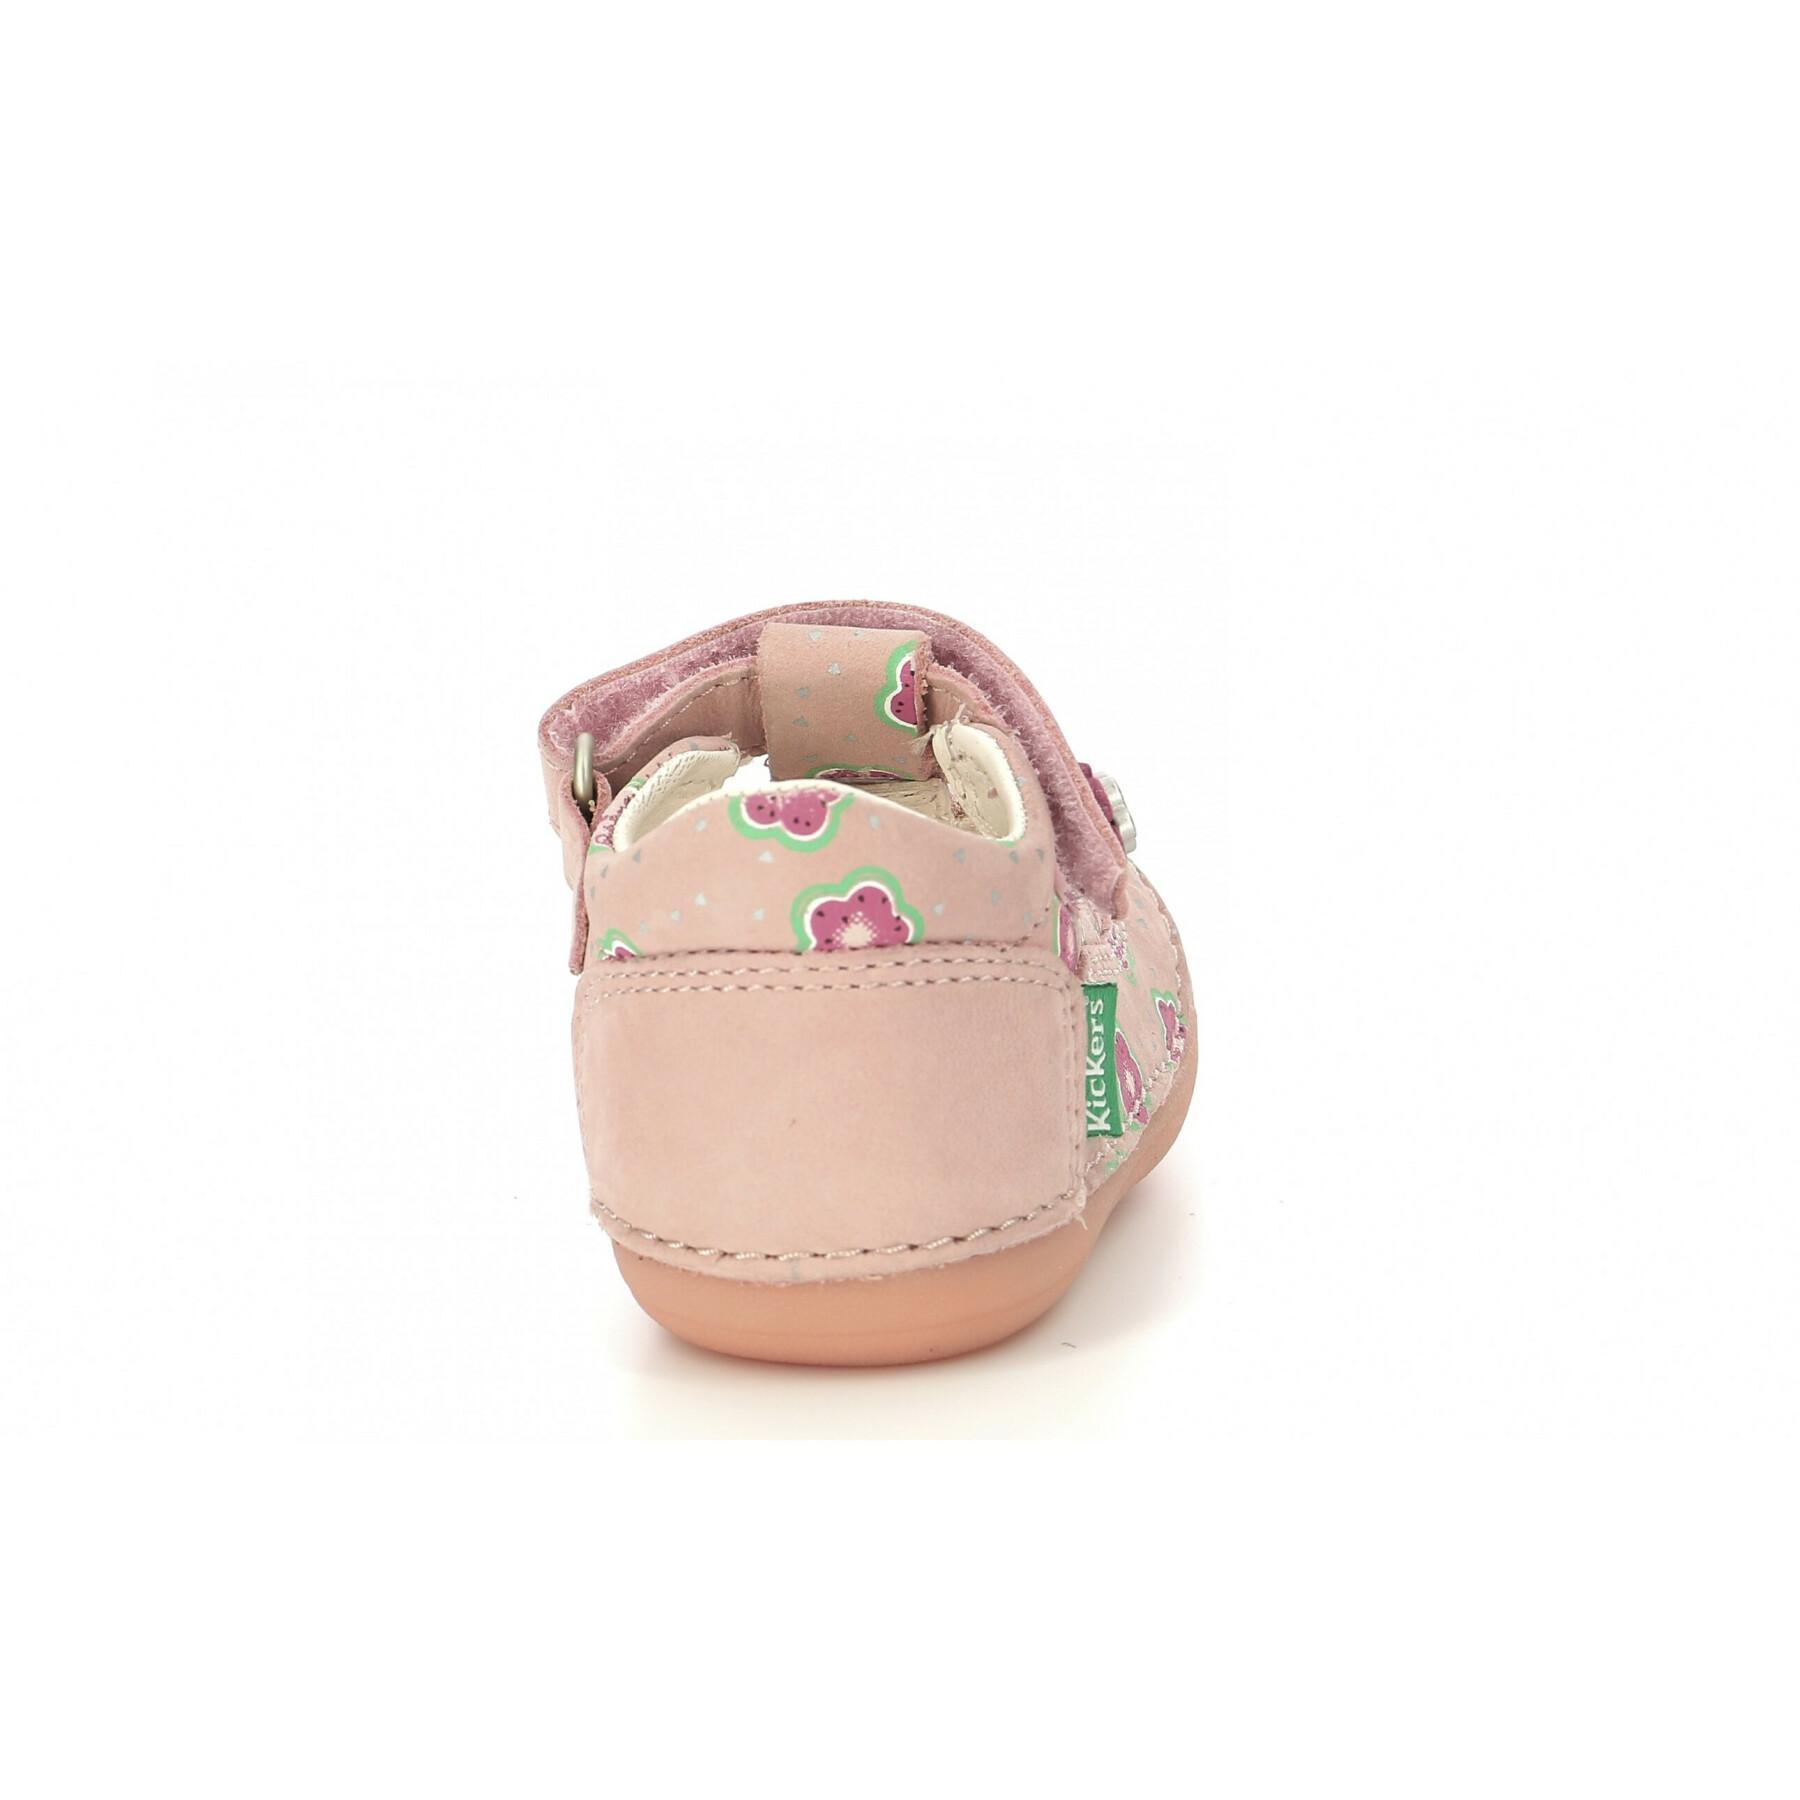 Baby girl sandals Kickers Sushy